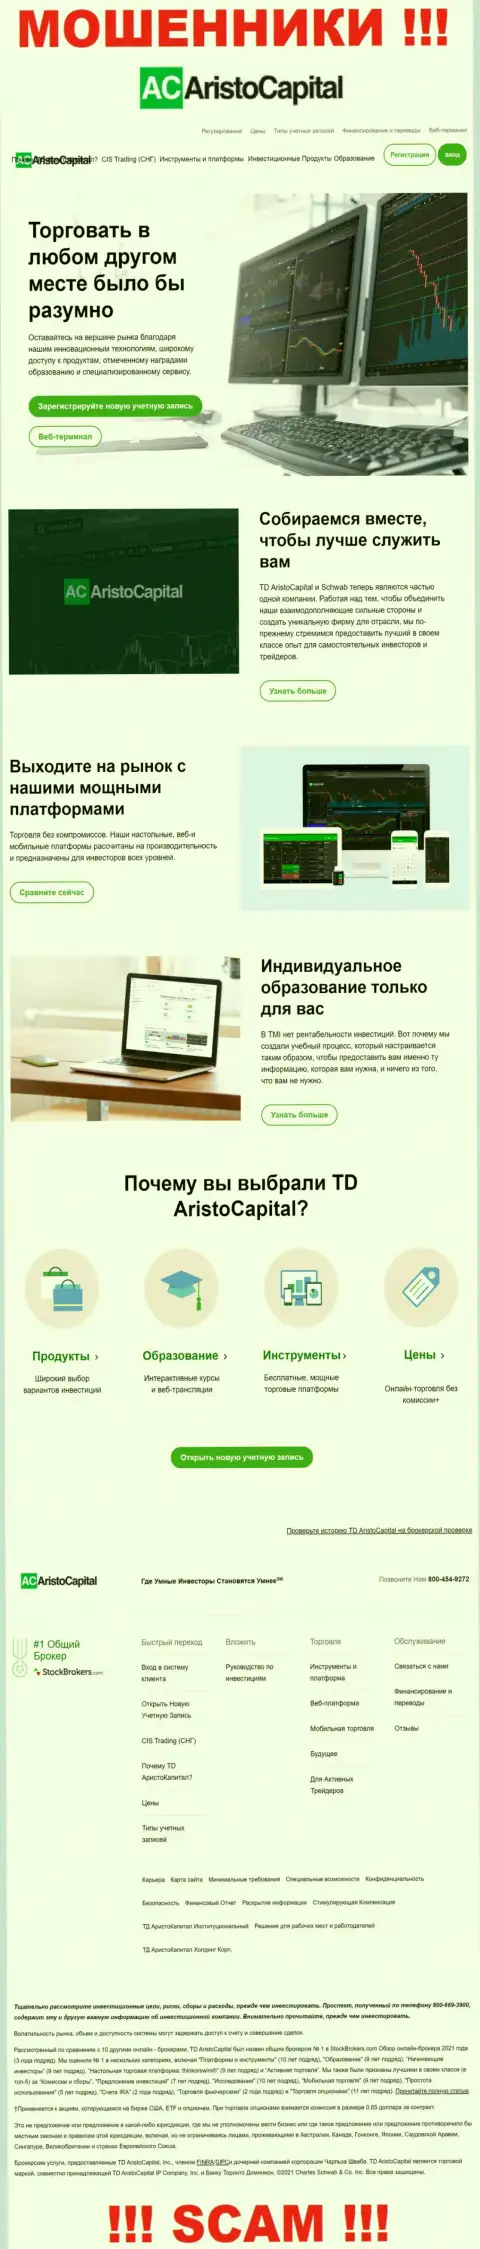 Обзор официального веб-портала мошенников АристоКапитал Ком